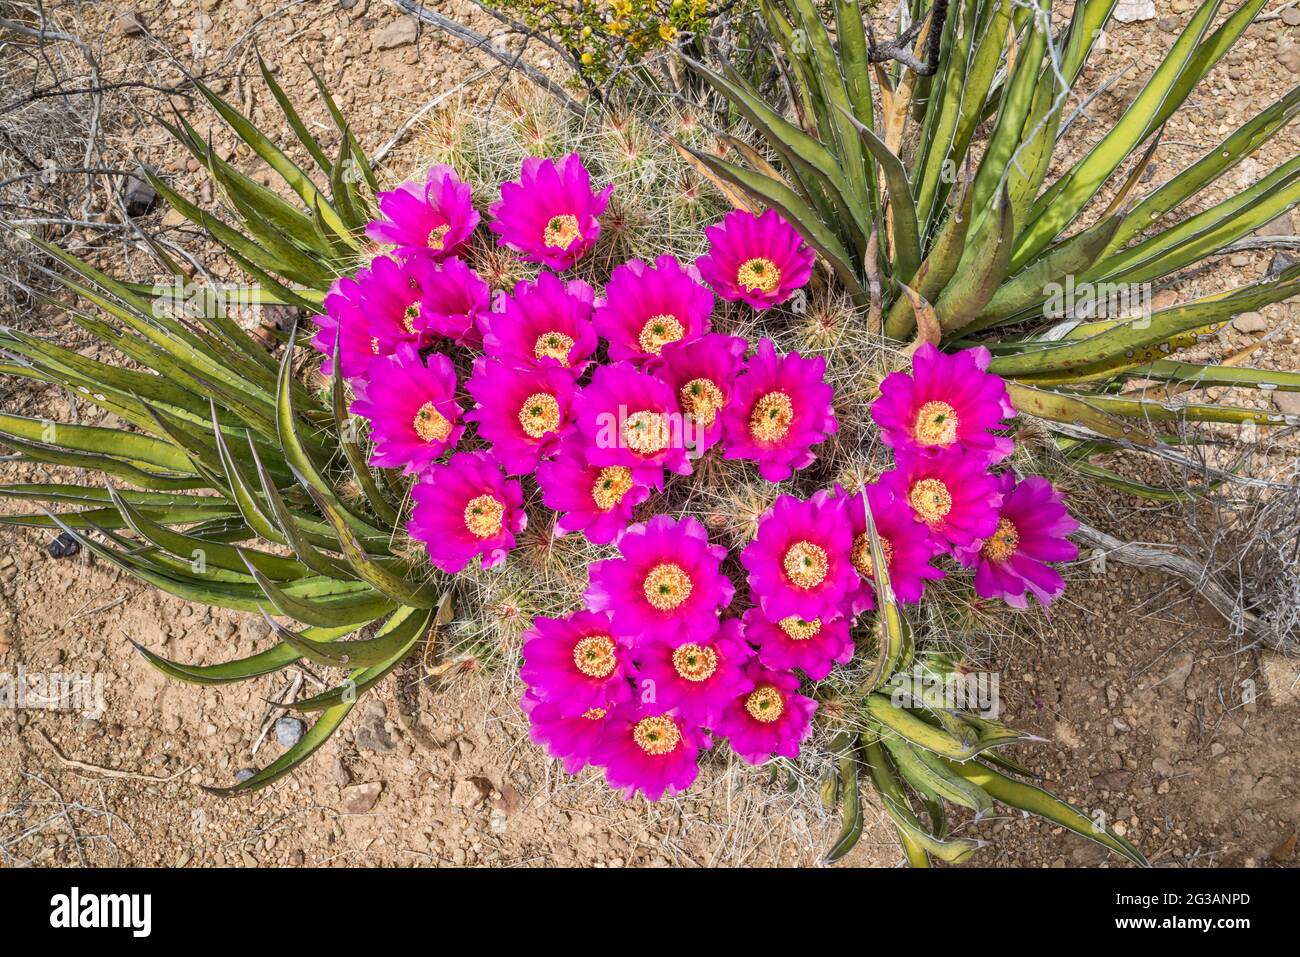 Cactus de fresa, agaves de lechuguilla en flor, área de El Solitario, Parque Estatal Big Bend Ranch, Texas, Estados Unidos Foto de stock